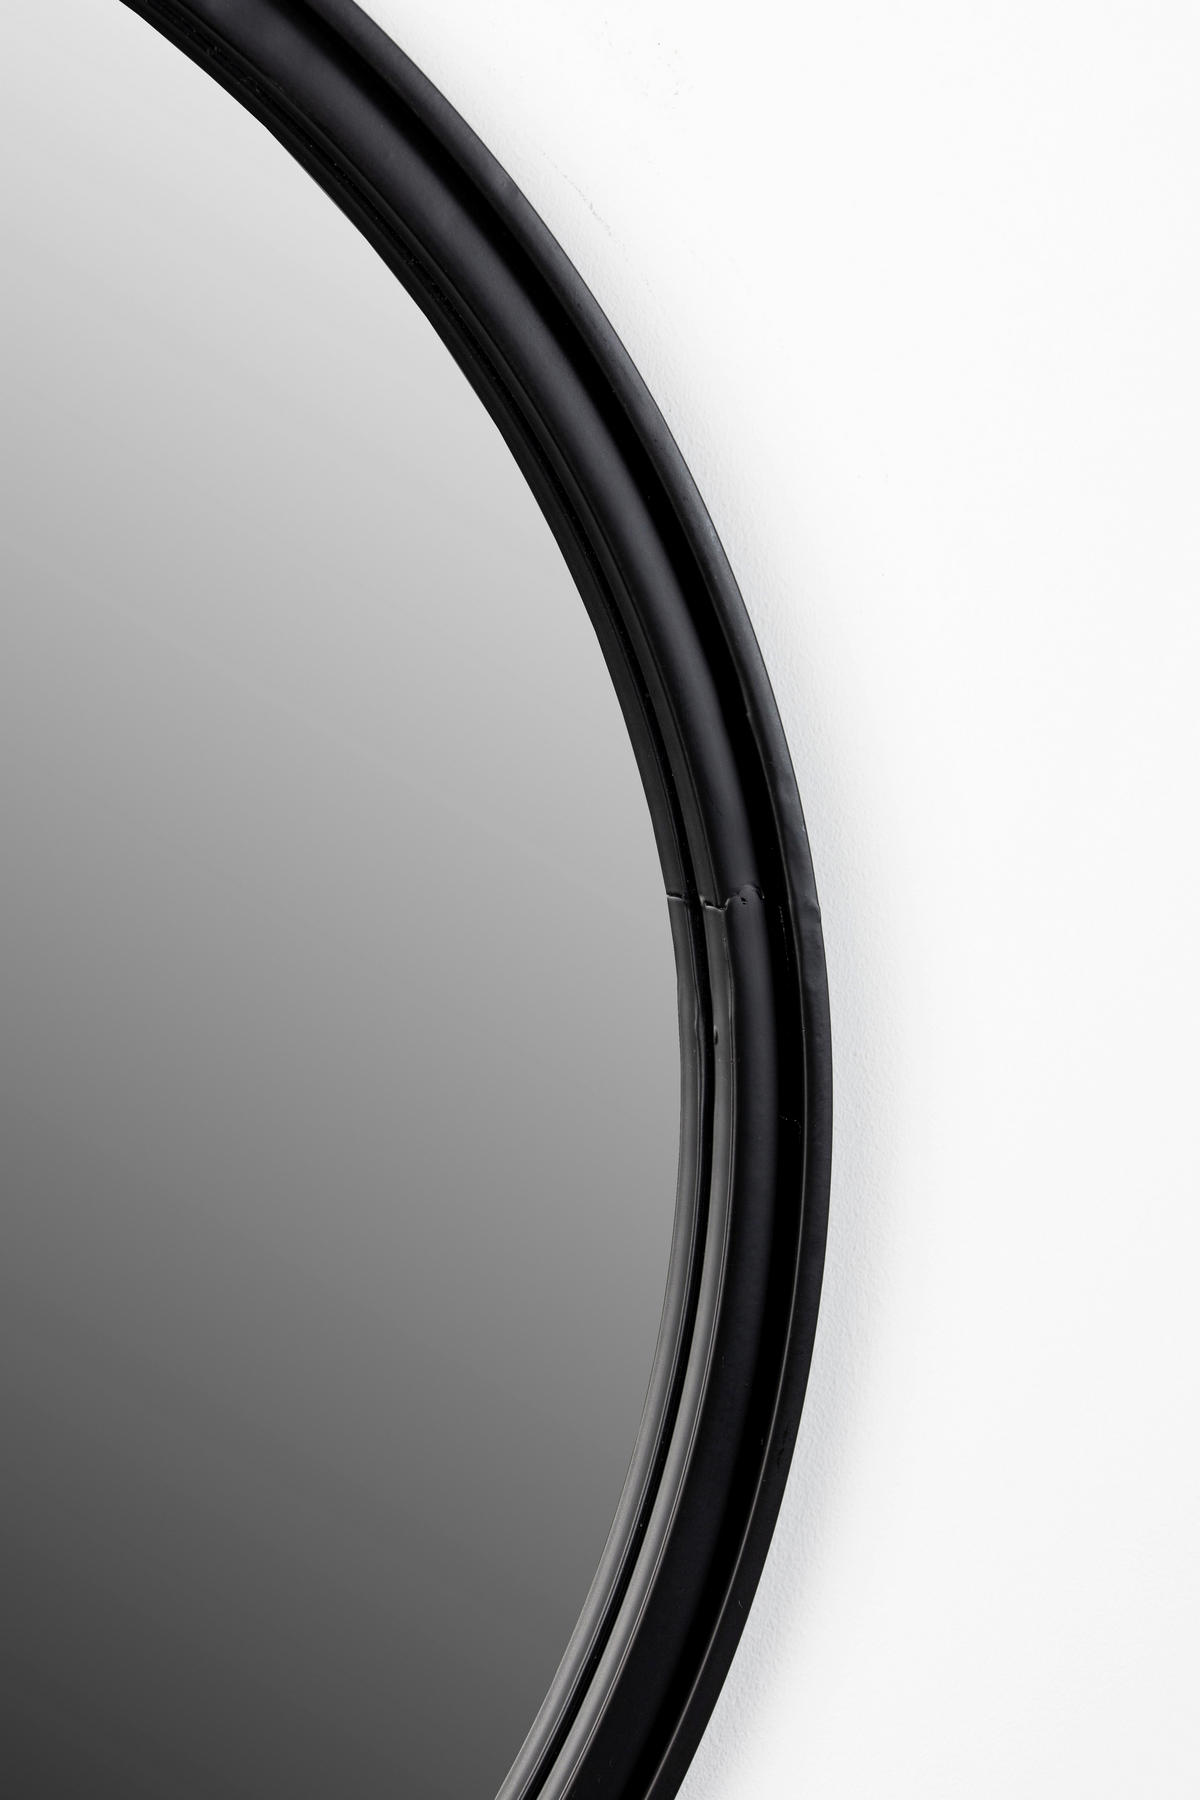 WANDSPIEGEL  - Schwarz, Design, Glas/Metall (60/60/7cm) - Carryhome